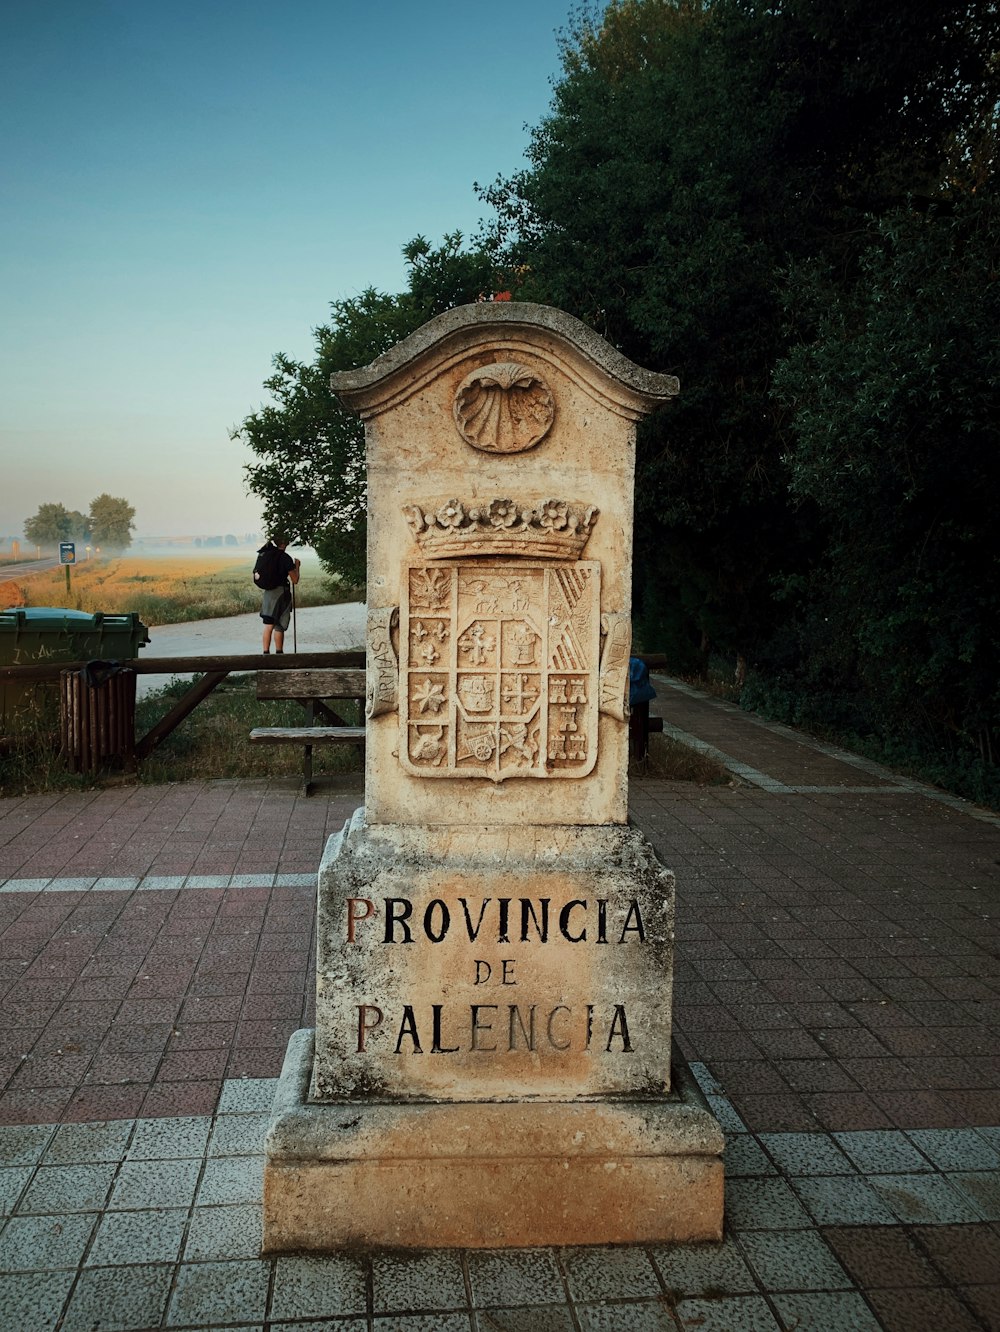 Provinia de Palencia concrete signage